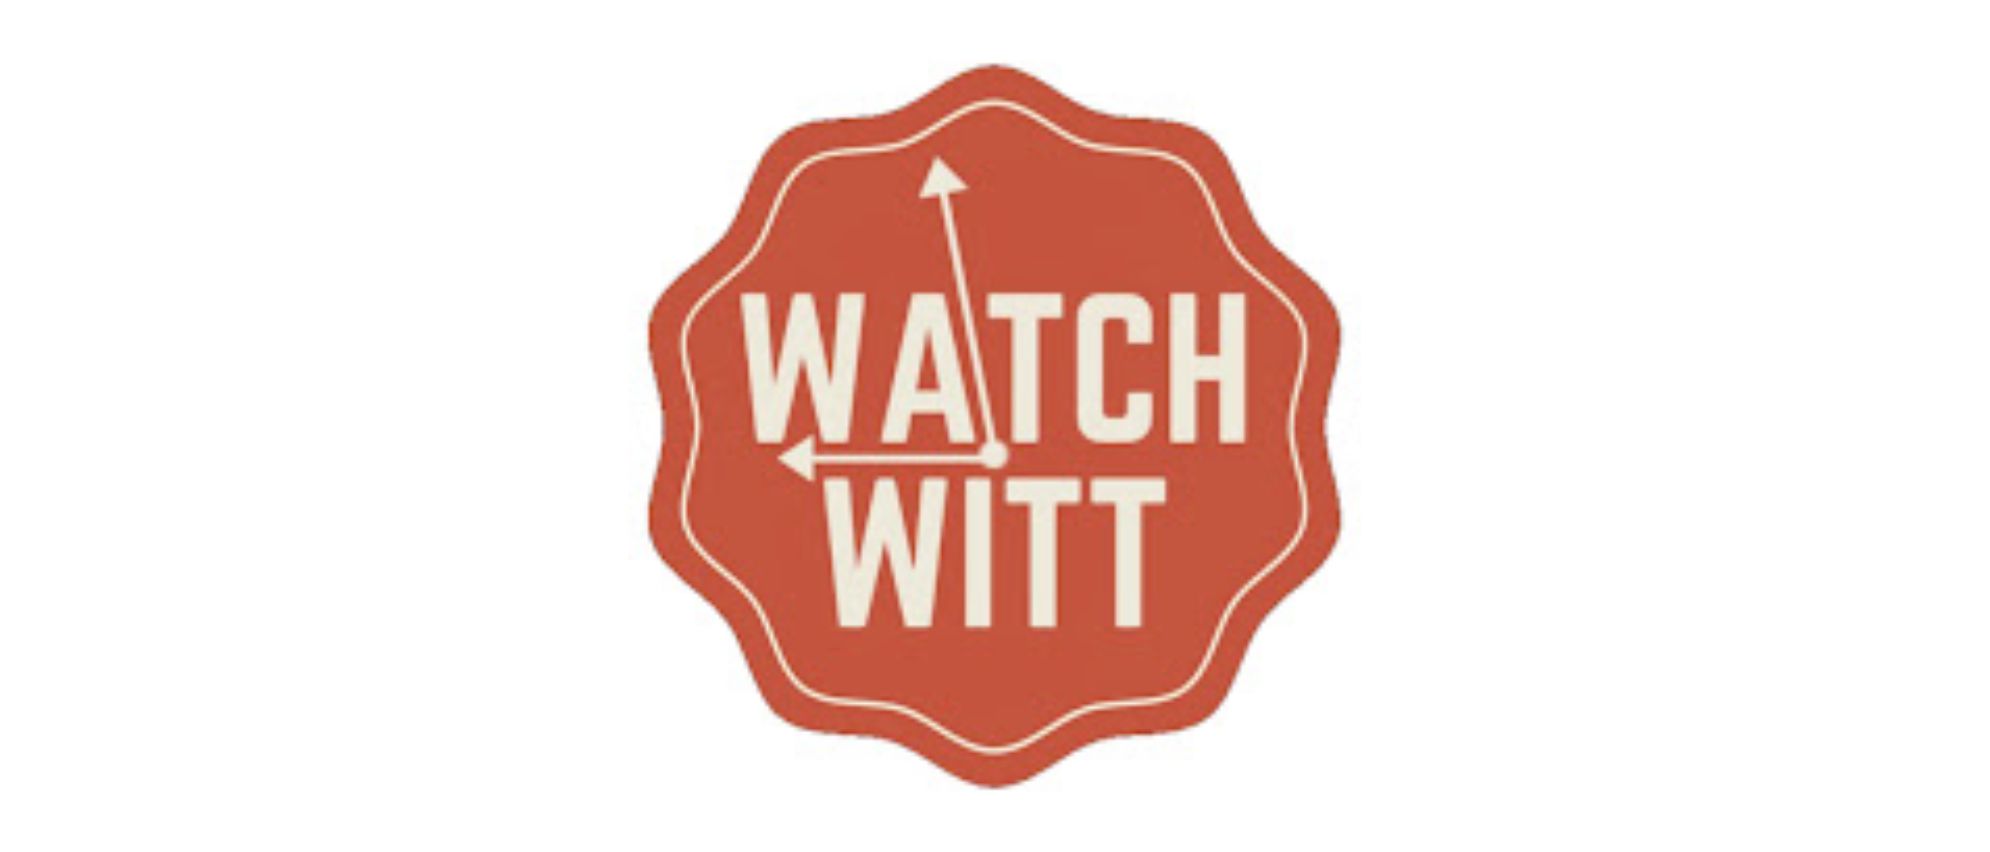 Watchwitt Reviews logo